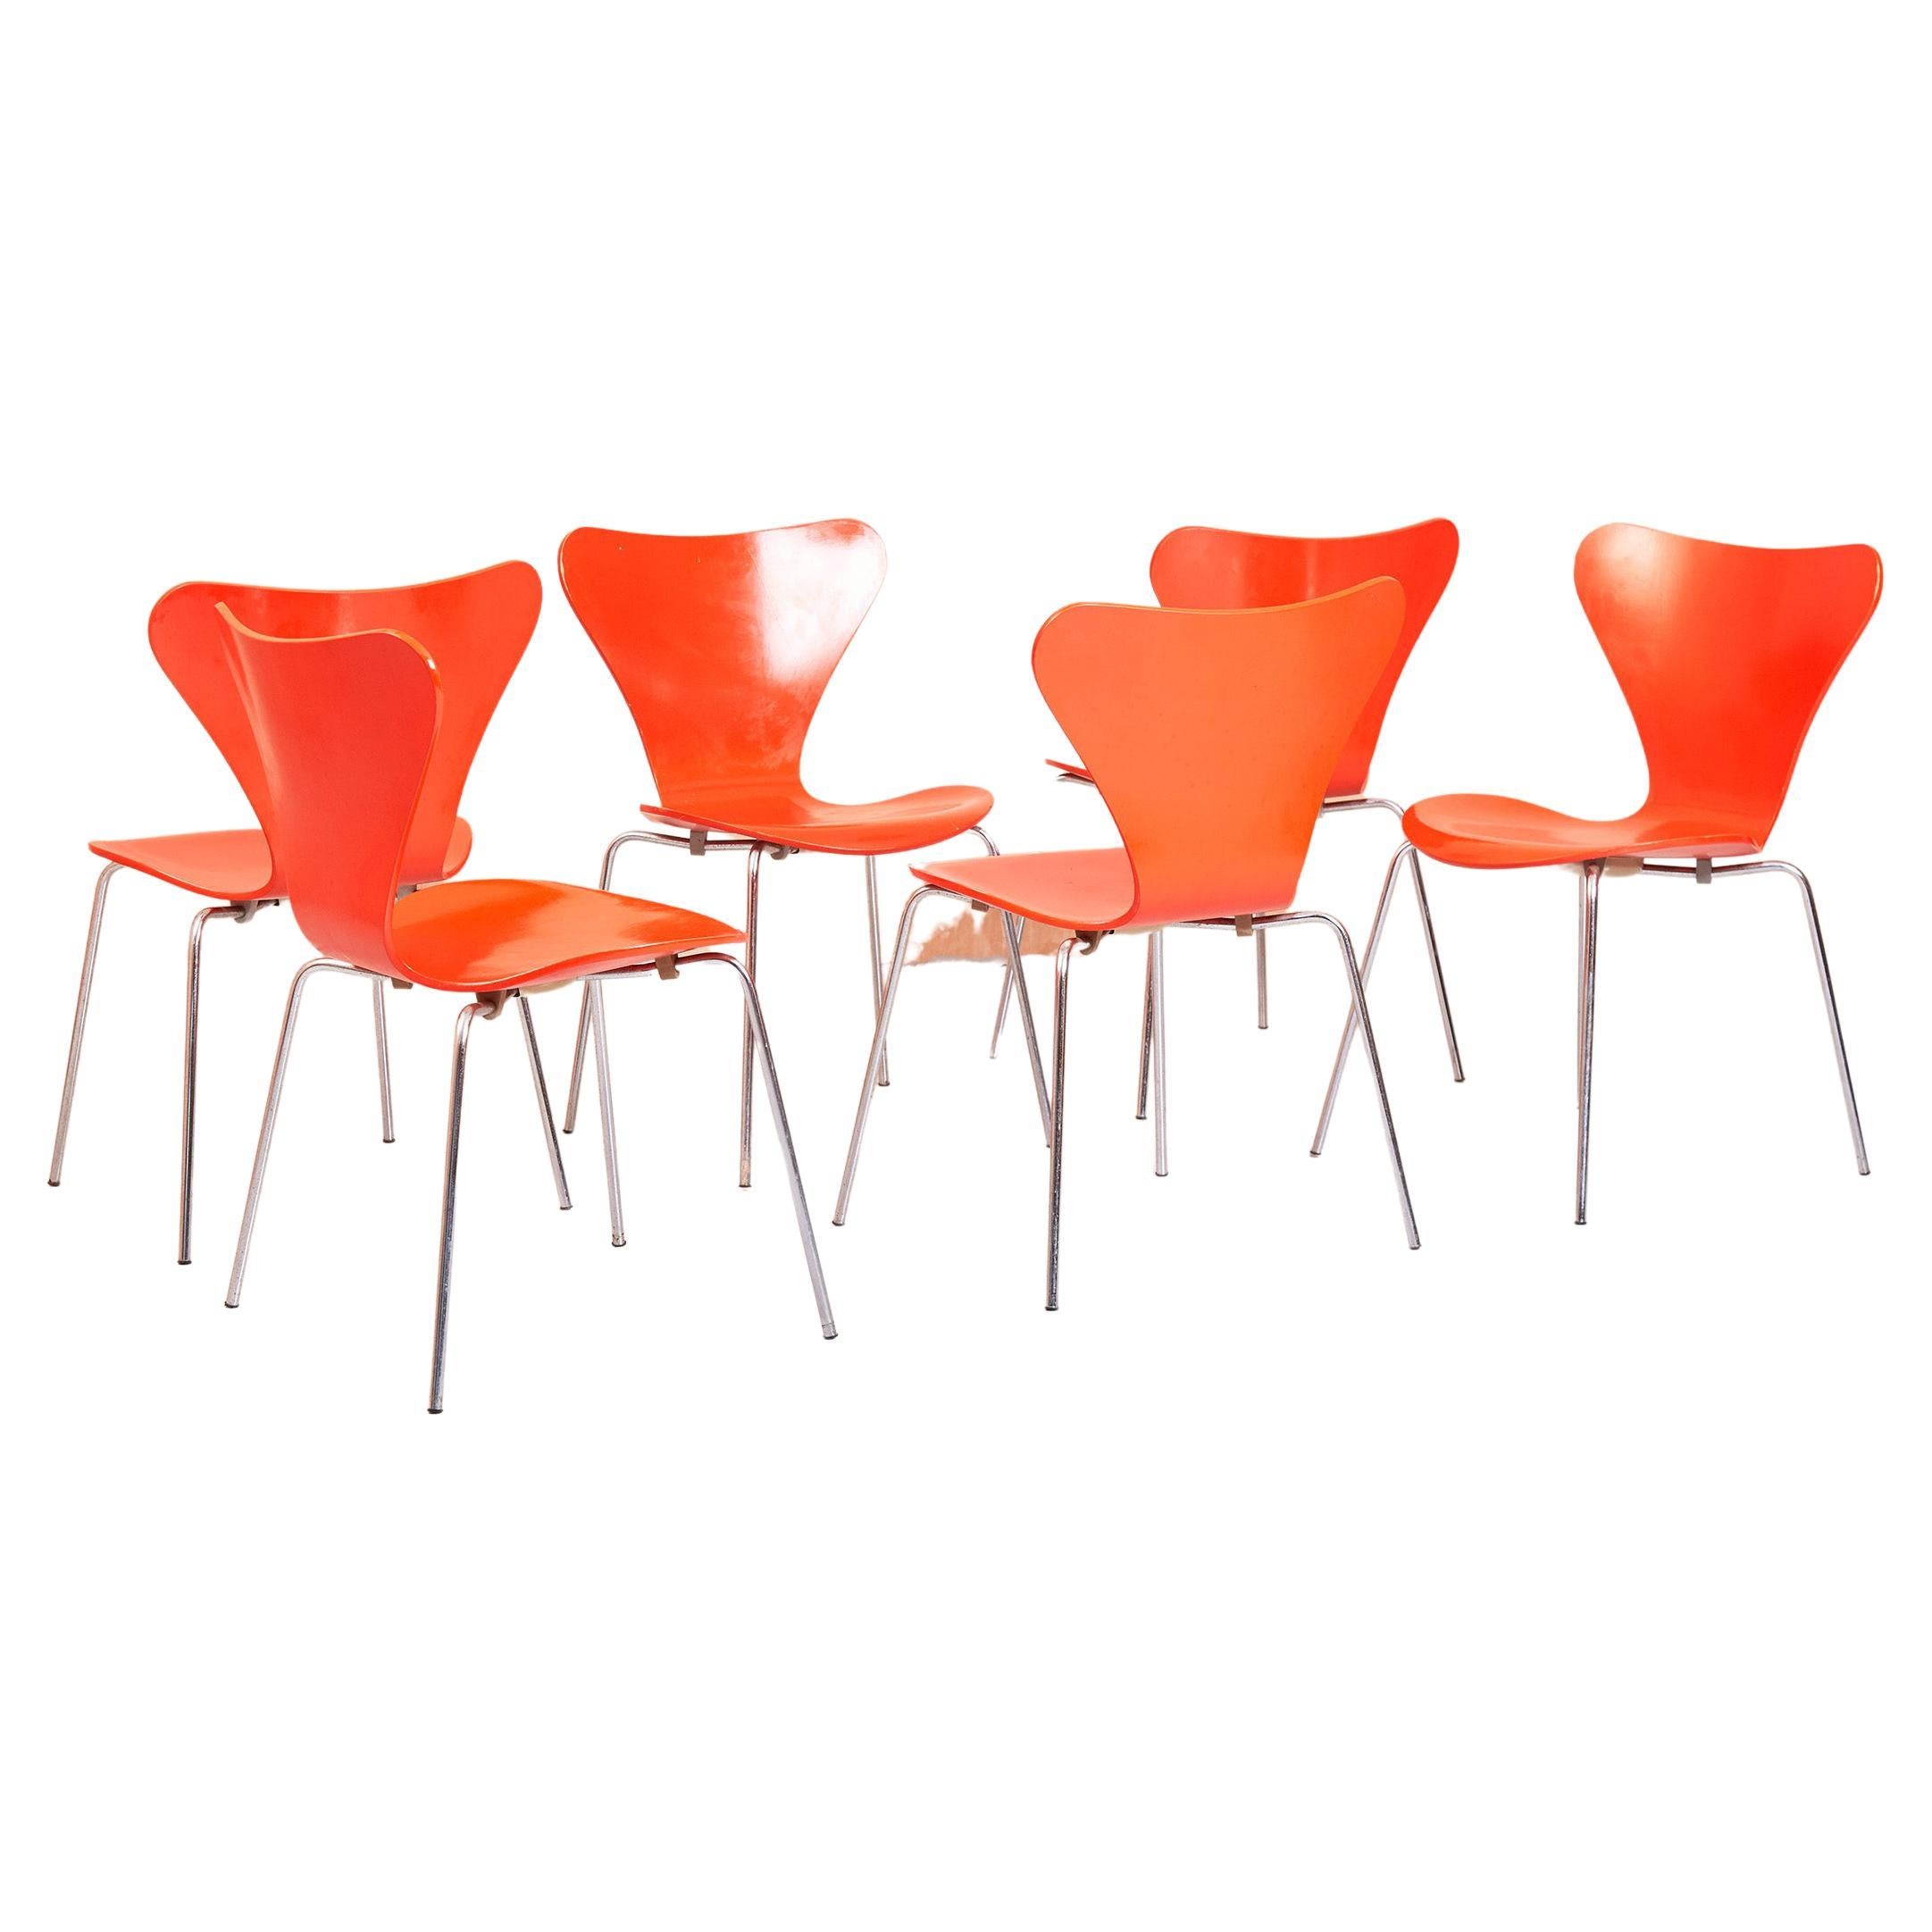 Arne Jacobsen 3107 Series 7 Chairs in Orange by Fritz Hansen, 1974